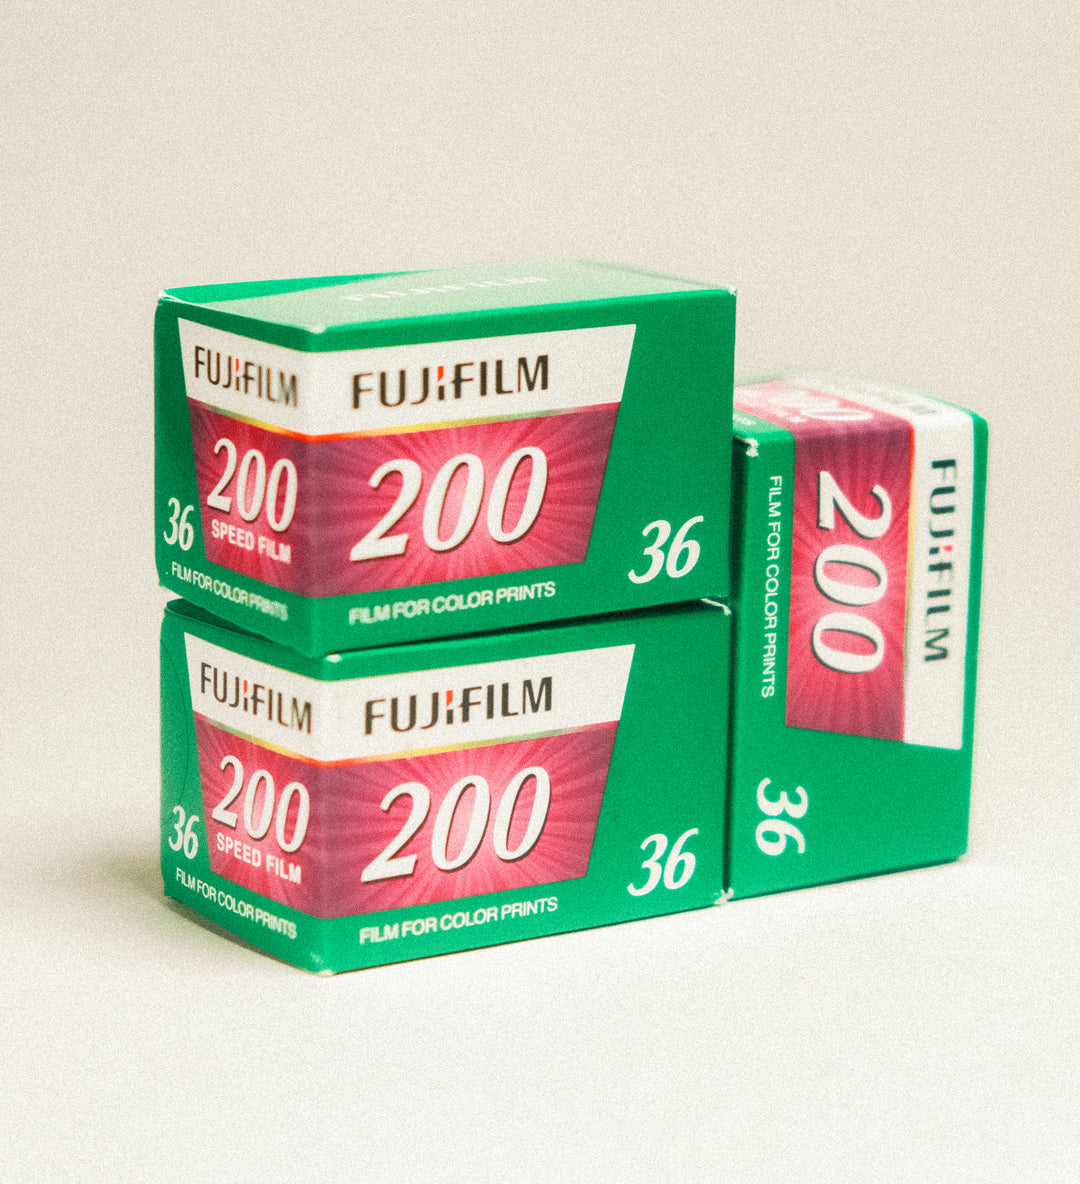 Fujifilm 200 x3